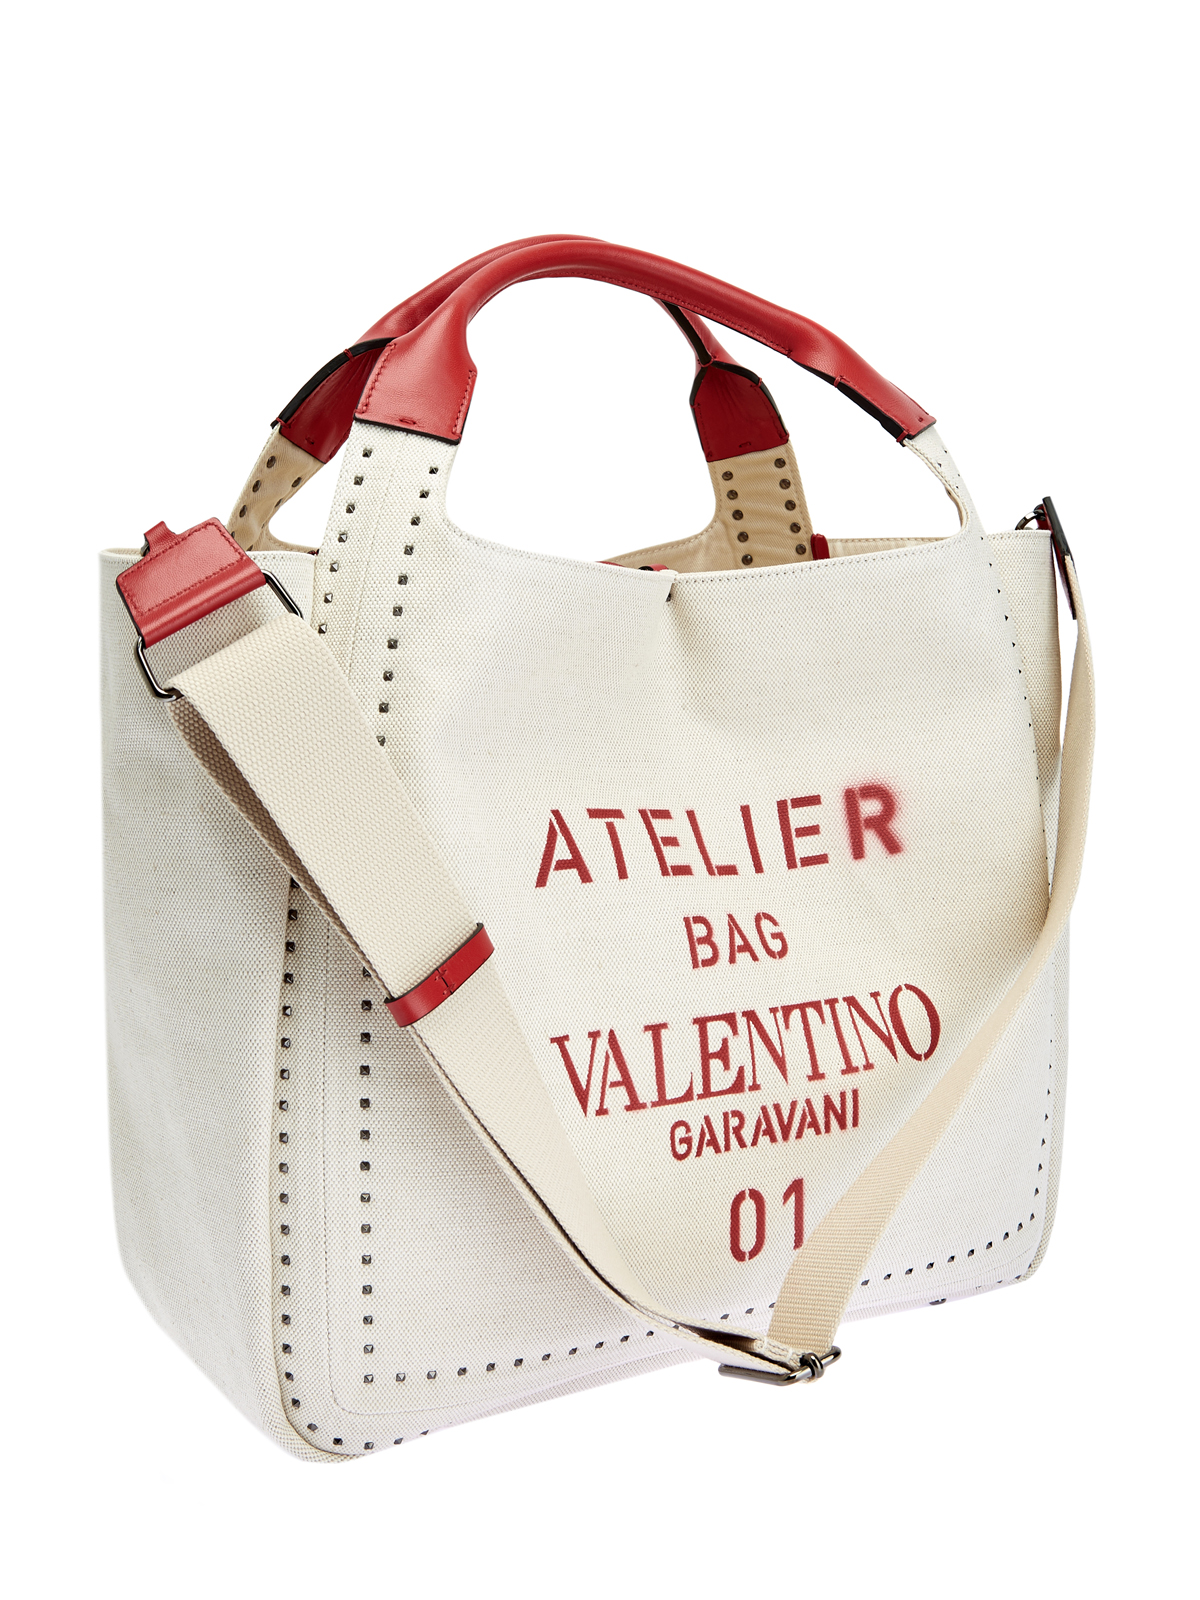 Сумка Atelier Bag с трафаретным принтом и кожаной отделкой VALENTINO, цвет белый, размер 37;38;39;40;38.5 - фото 3